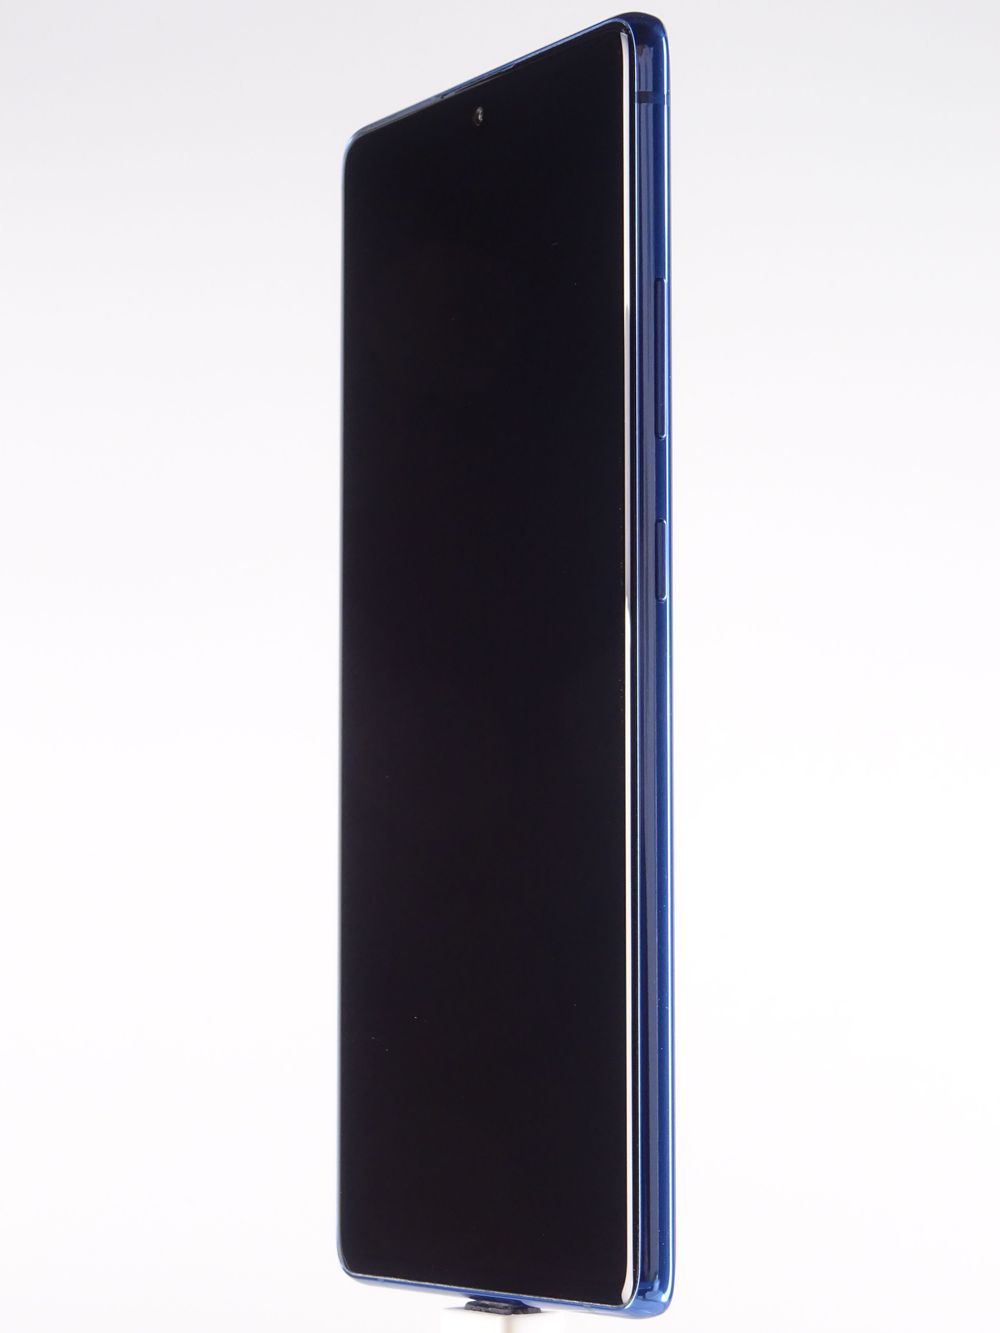 Мобилен телефон Samsung, Galaxy S10 Lite, 128 GB, Blue,  Като нов